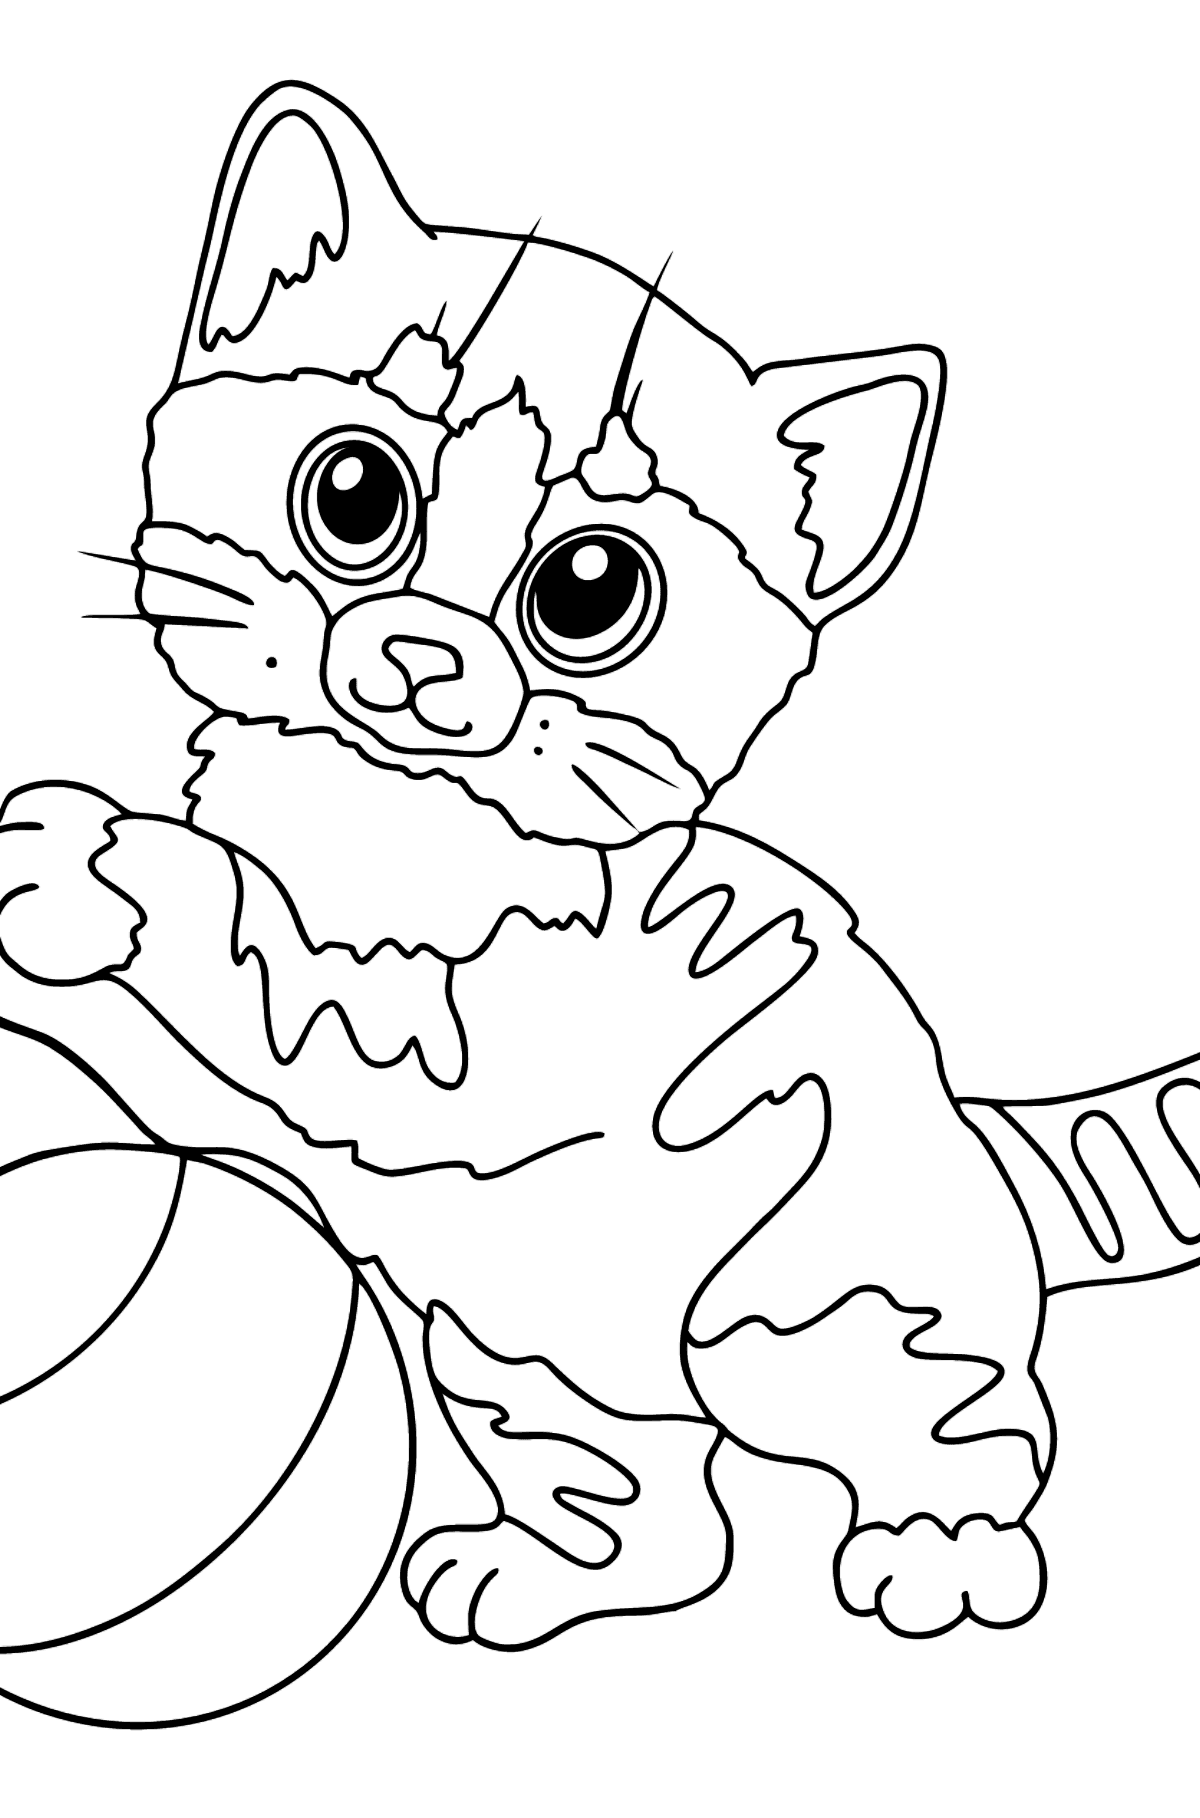 Gatito gracioso para colorear dibujo - Dibujos para Colorear para Niños